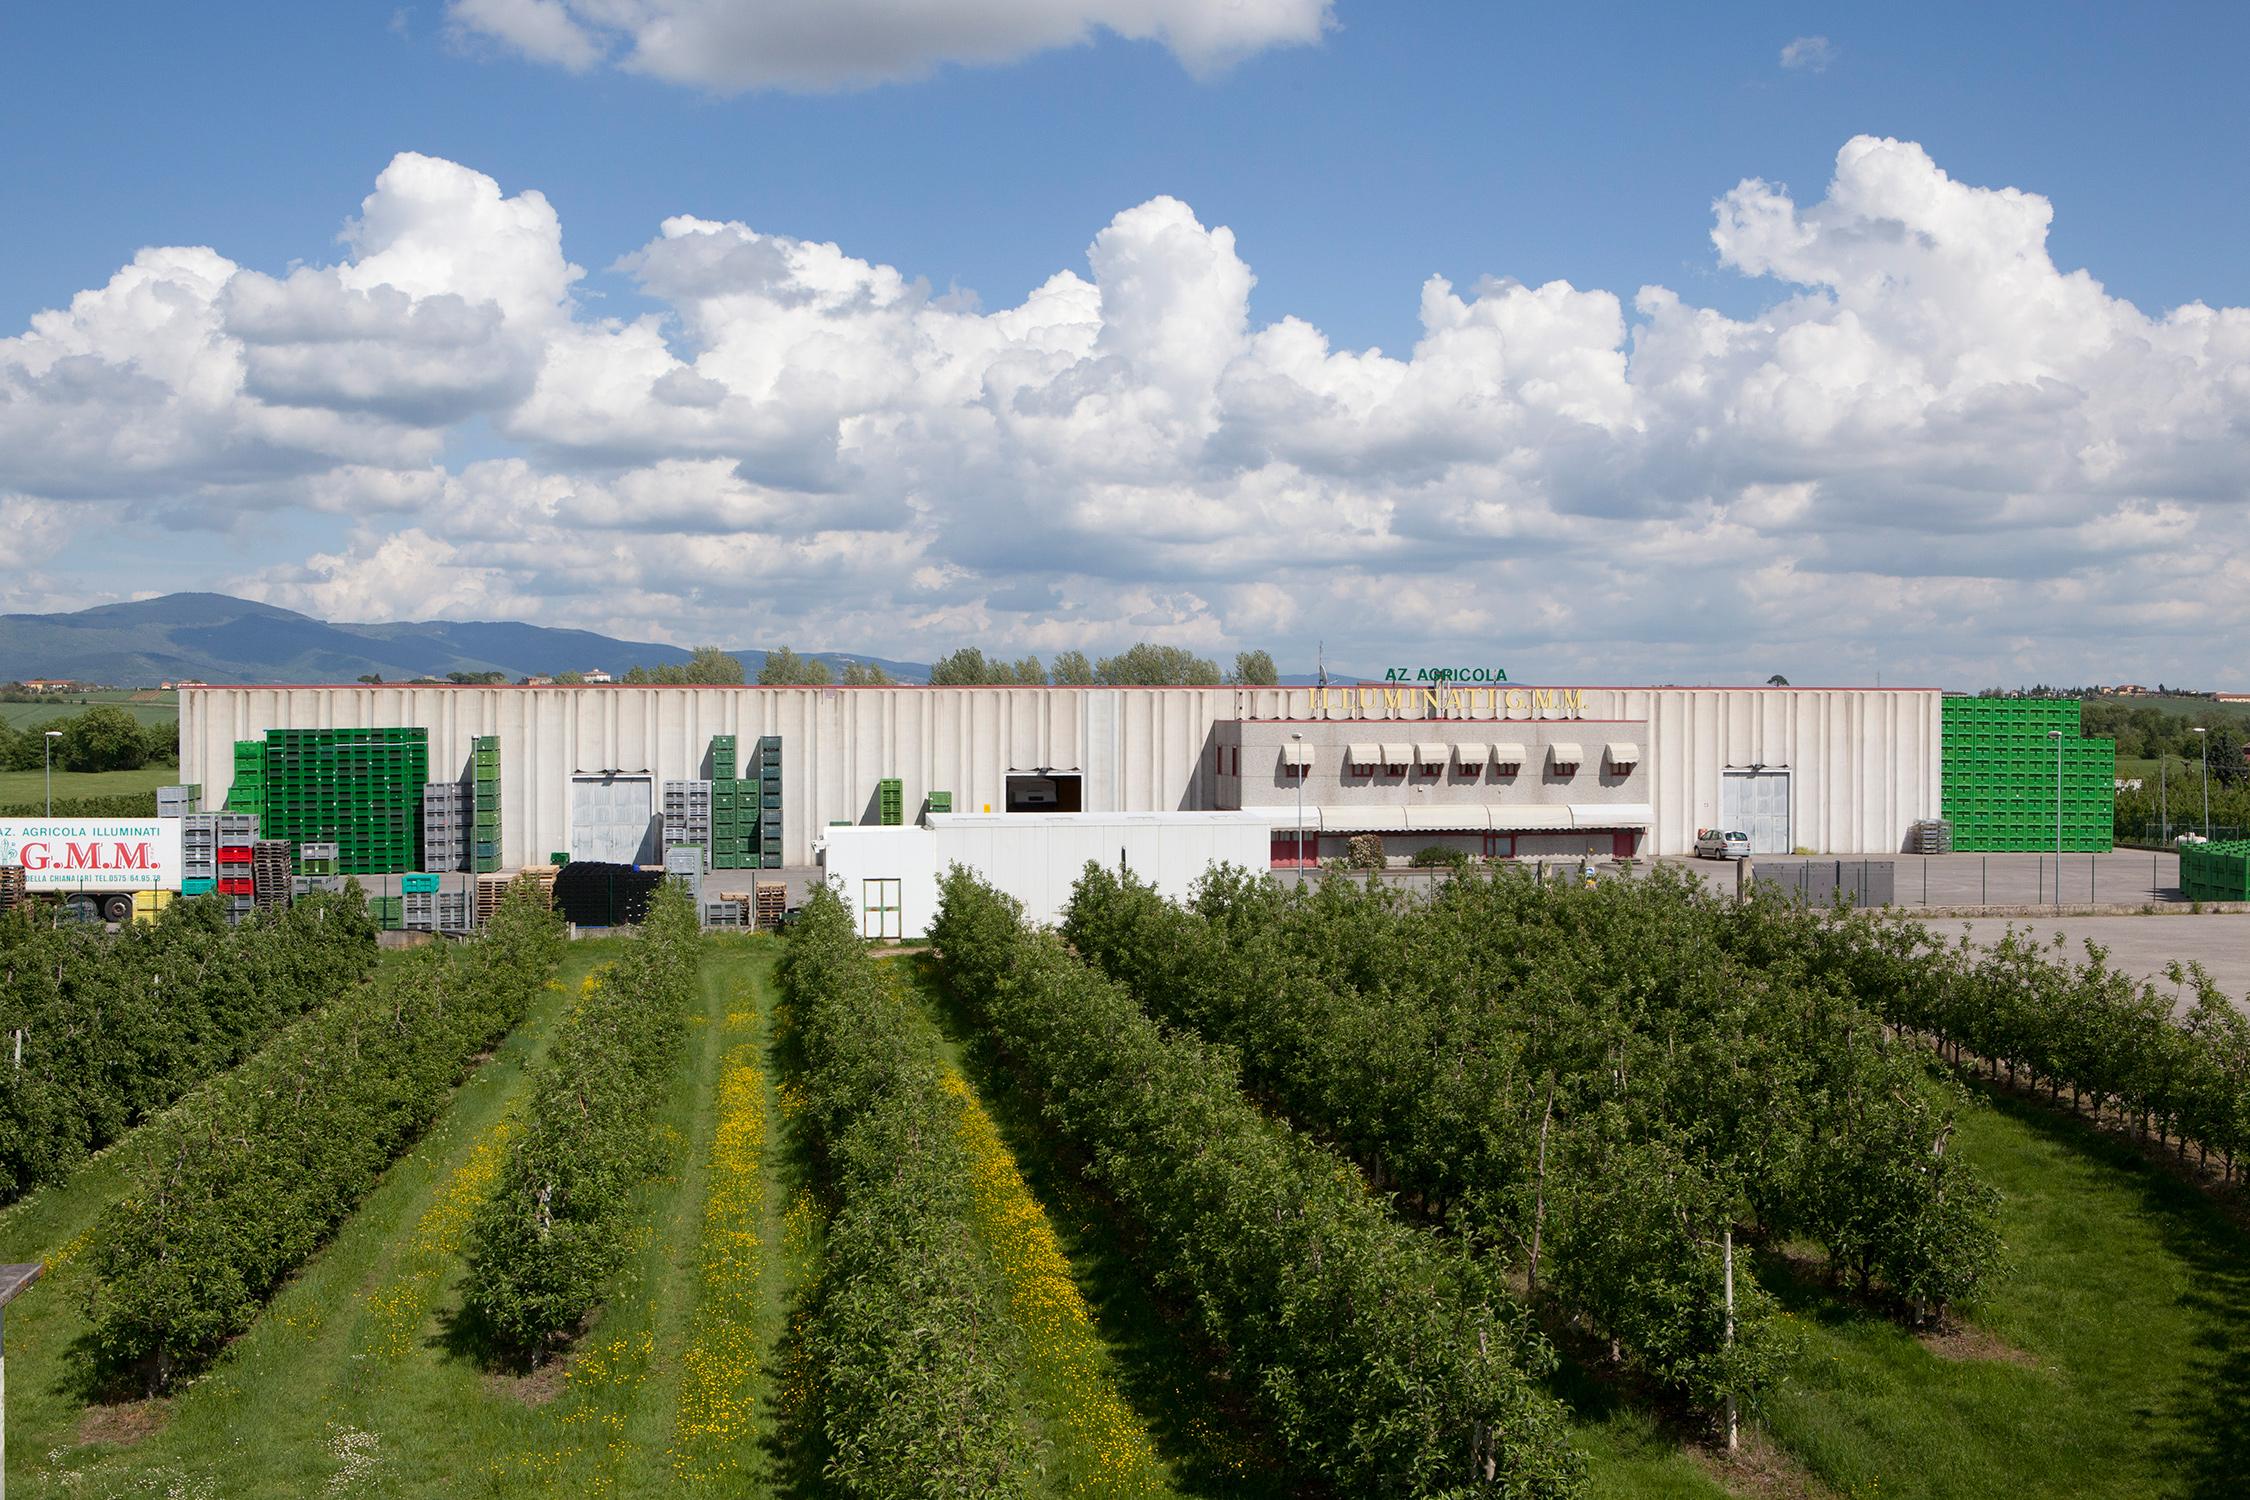 Produzione frutta sostenibile certificata in Toscana | Illuminati G.M.M.